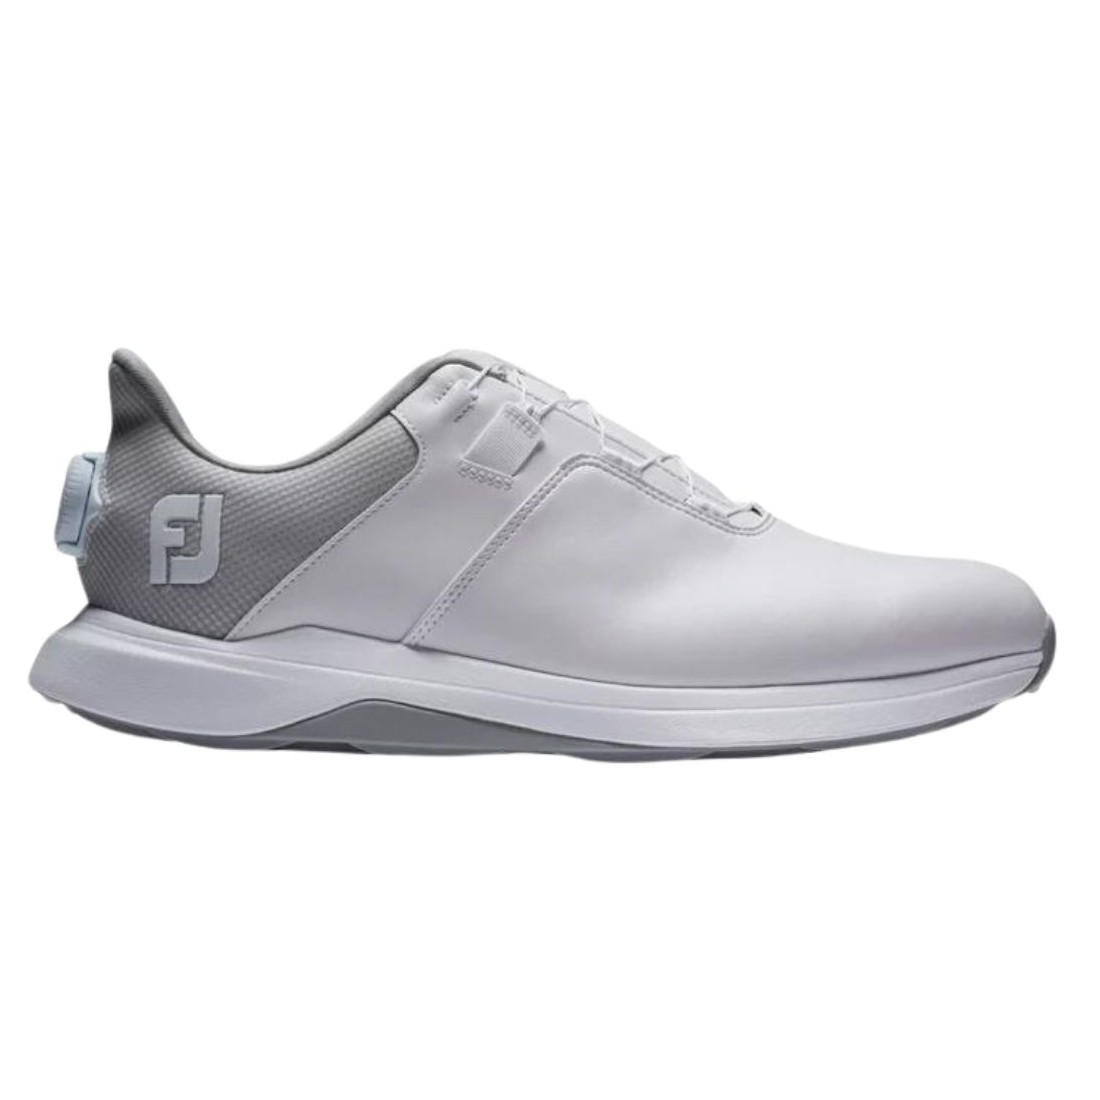 Footjoy chaussures de golf ProLite White Grey BOA vue exterieure